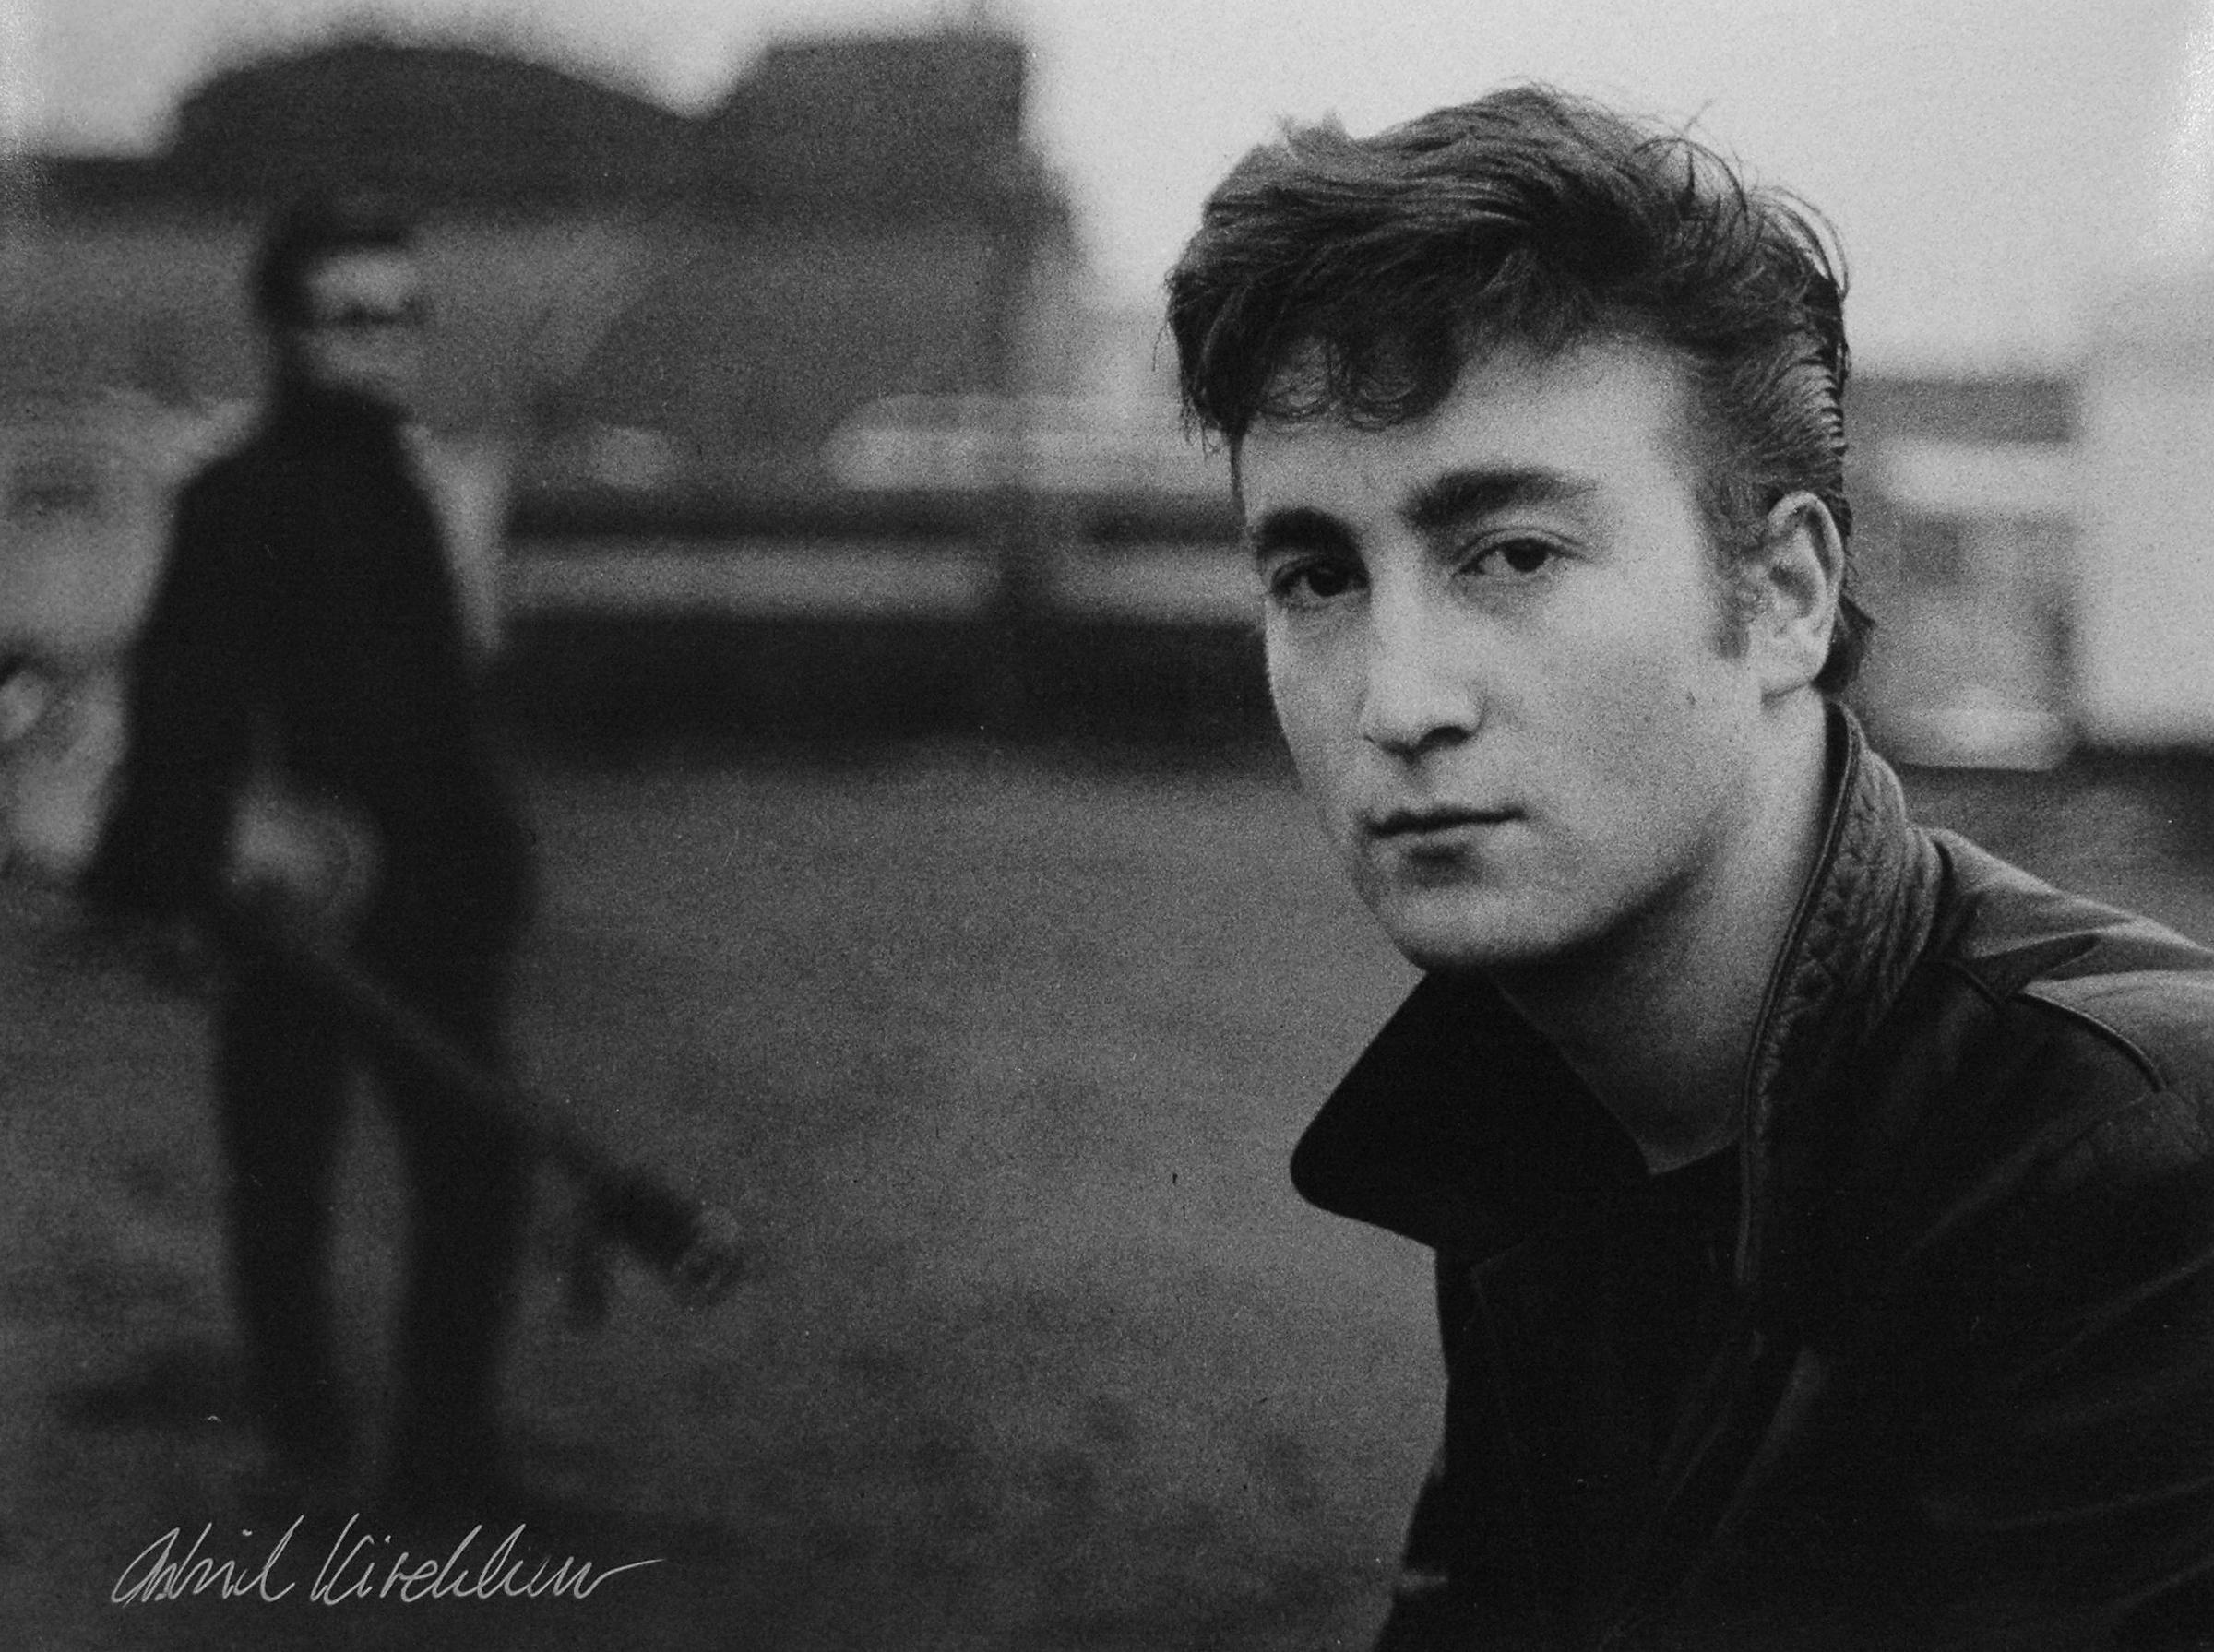 Astrid Kirchherr Black and White Photograph - John Lennon Fairground